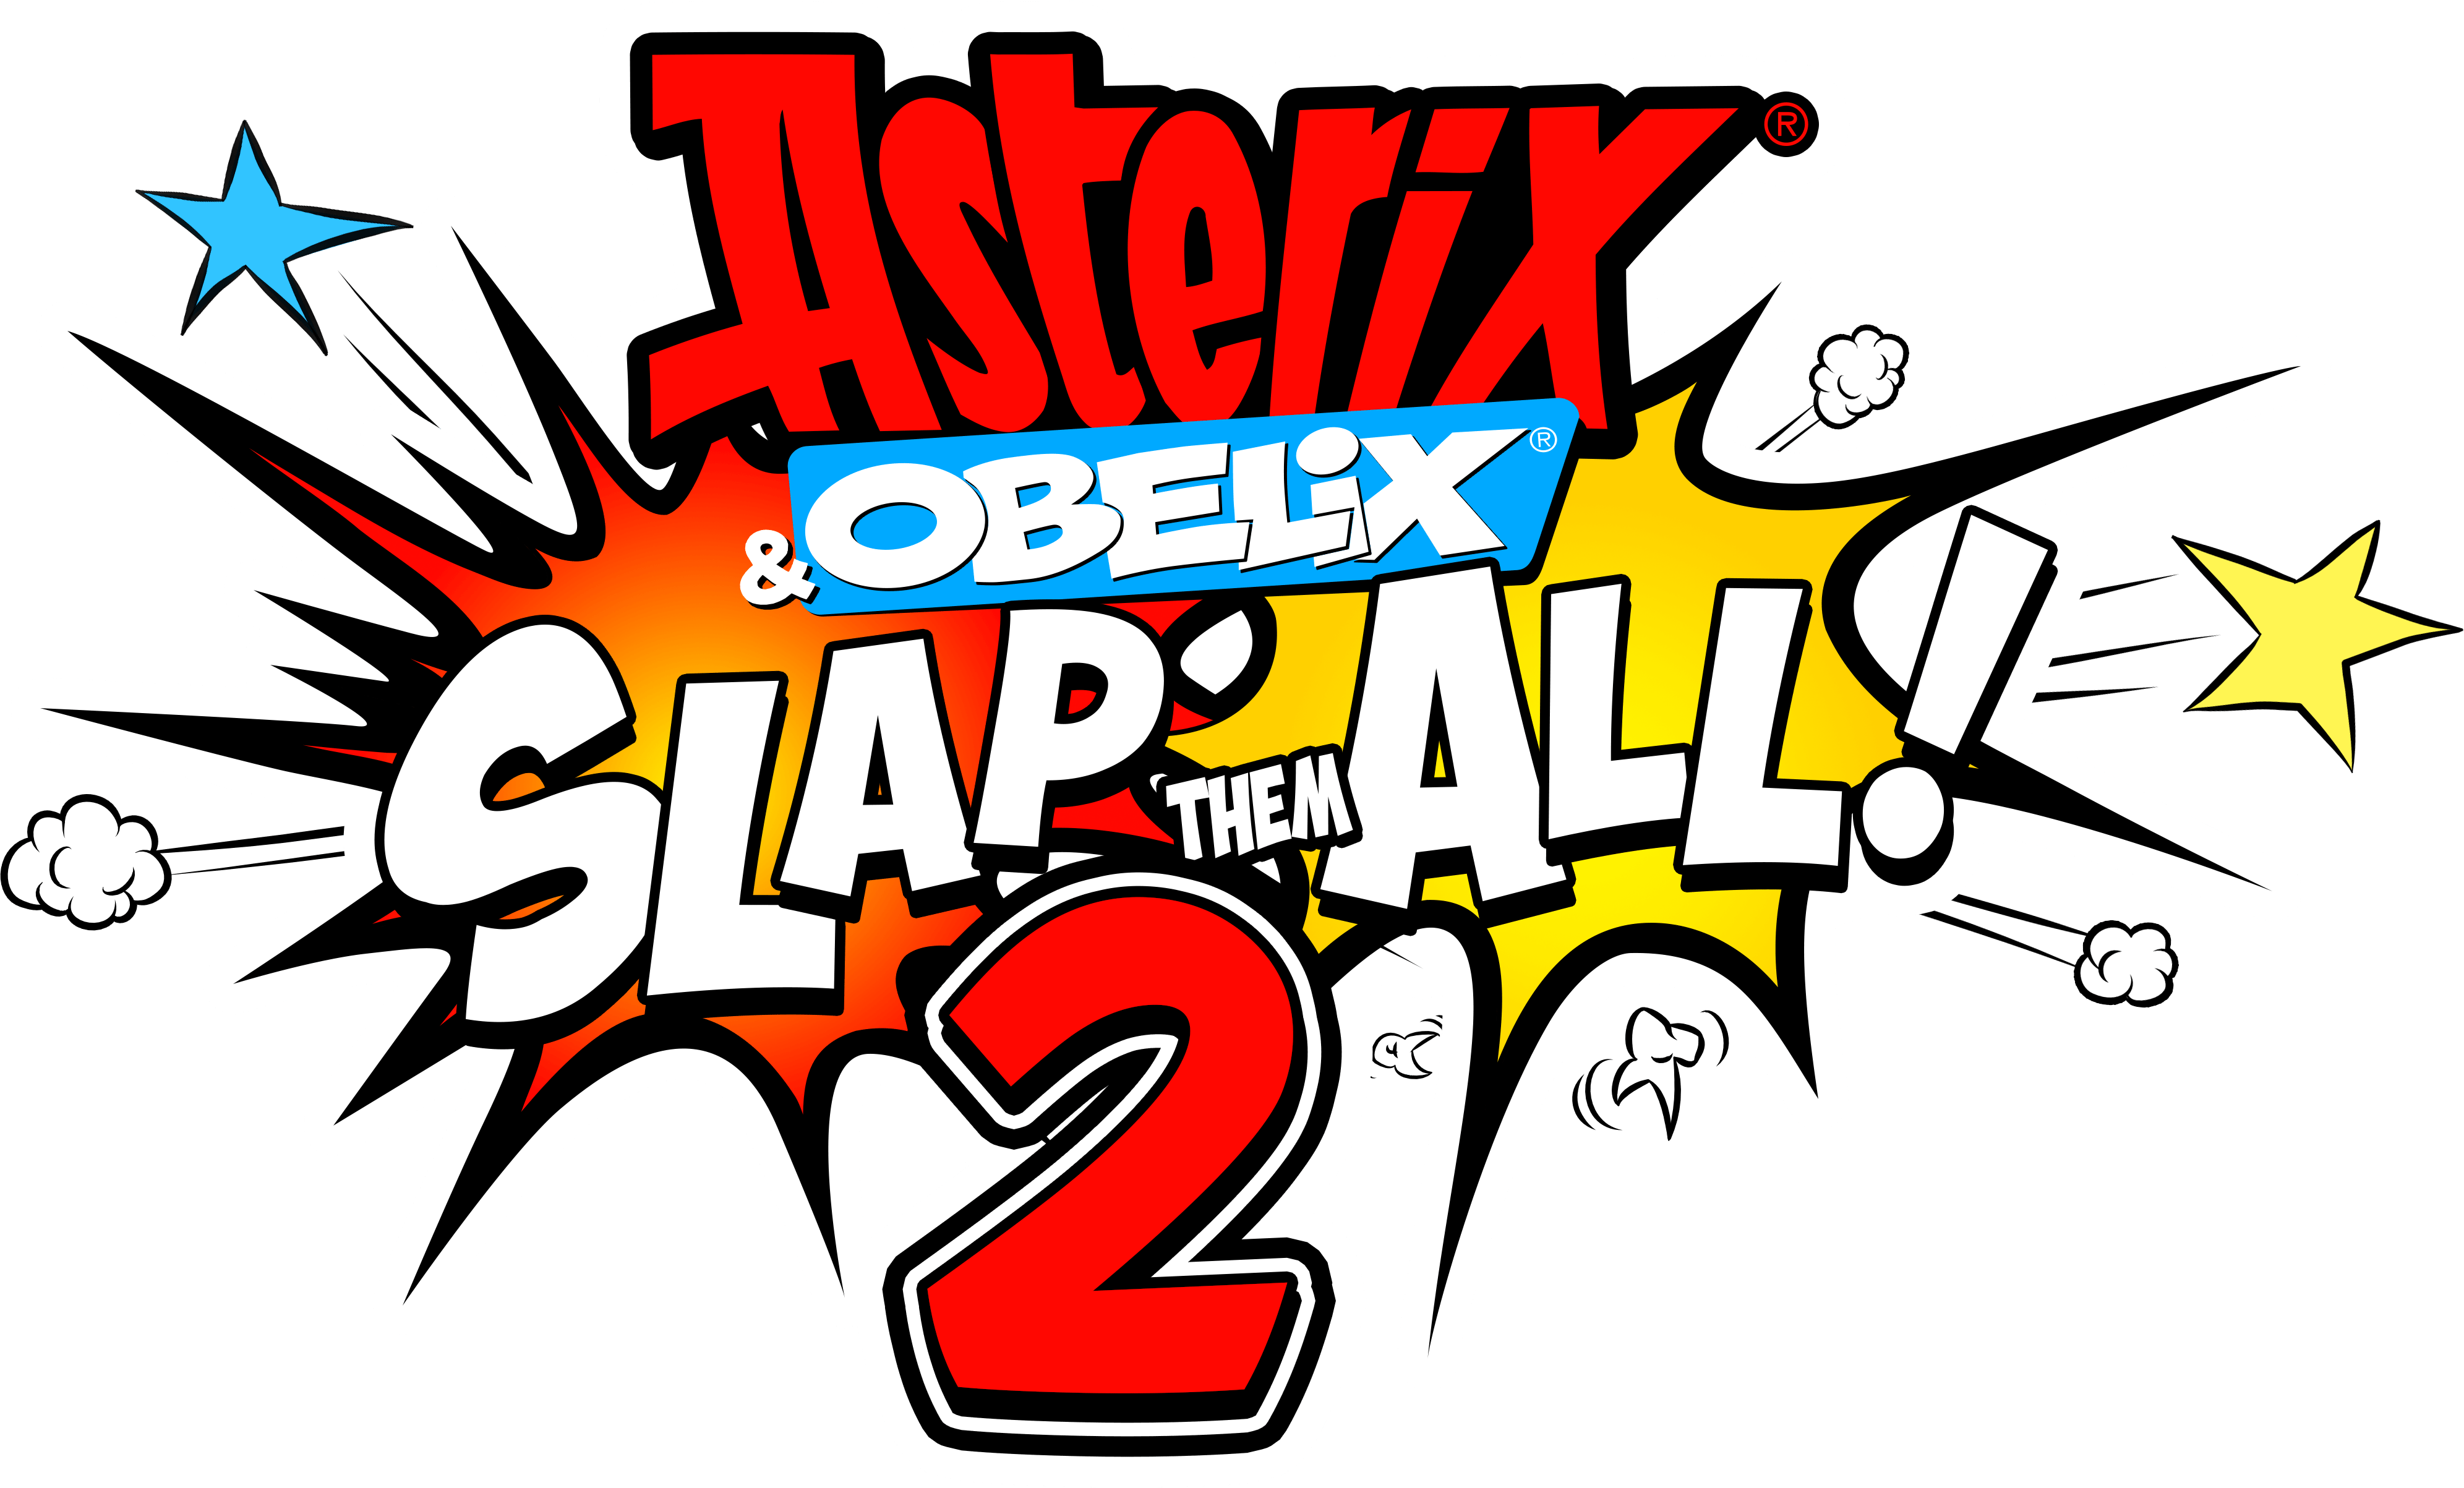 Asterix & Obelix: Slap Them All! 2